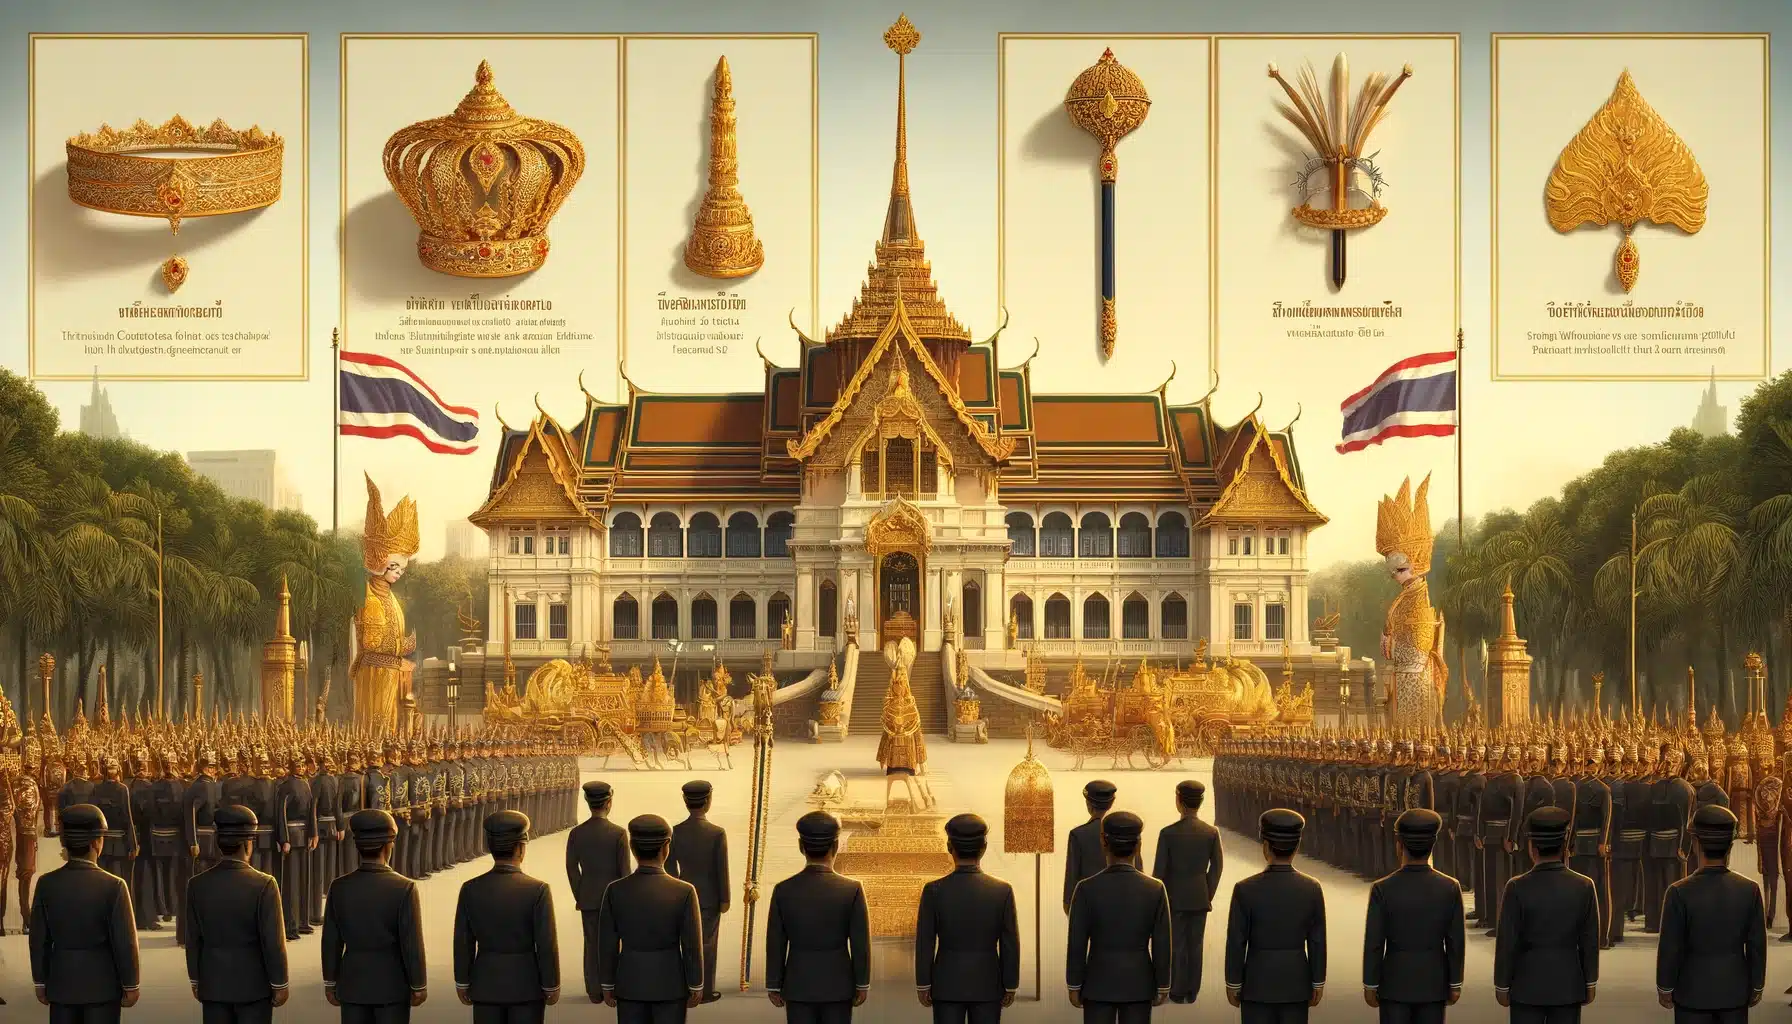 ภาพวาดแนวนอนแสดงเครื่องราชกกุธภัณฑ์ที่ใช้ในพระราชพิธีฉัตรมงคล ณ พระบรมมหาราชวัง มีพระบรมมหาราชวังประดับด้วยเครื่องประดับทองและธงชาติไทย ในภาพมีเครื่องราชกกุธภัณฑ์ทั้งห้า ได้แก่ พระมหาพิชัยมงกุฎ พระแสงขรรค์ชัยศรี ธารพระกร วาลวิชนี และฉลองพระบาทเชิงงอน มีคำบรรยายสั้น ๆ เป็นภาษาไทย แต่ละรายการอยู่ในเบื้องหน้า ผู้คนในชุดไทยดั้งเดิมอยู่ในภาพเพื่อเน้นย้ำความสำคัญของพิธี